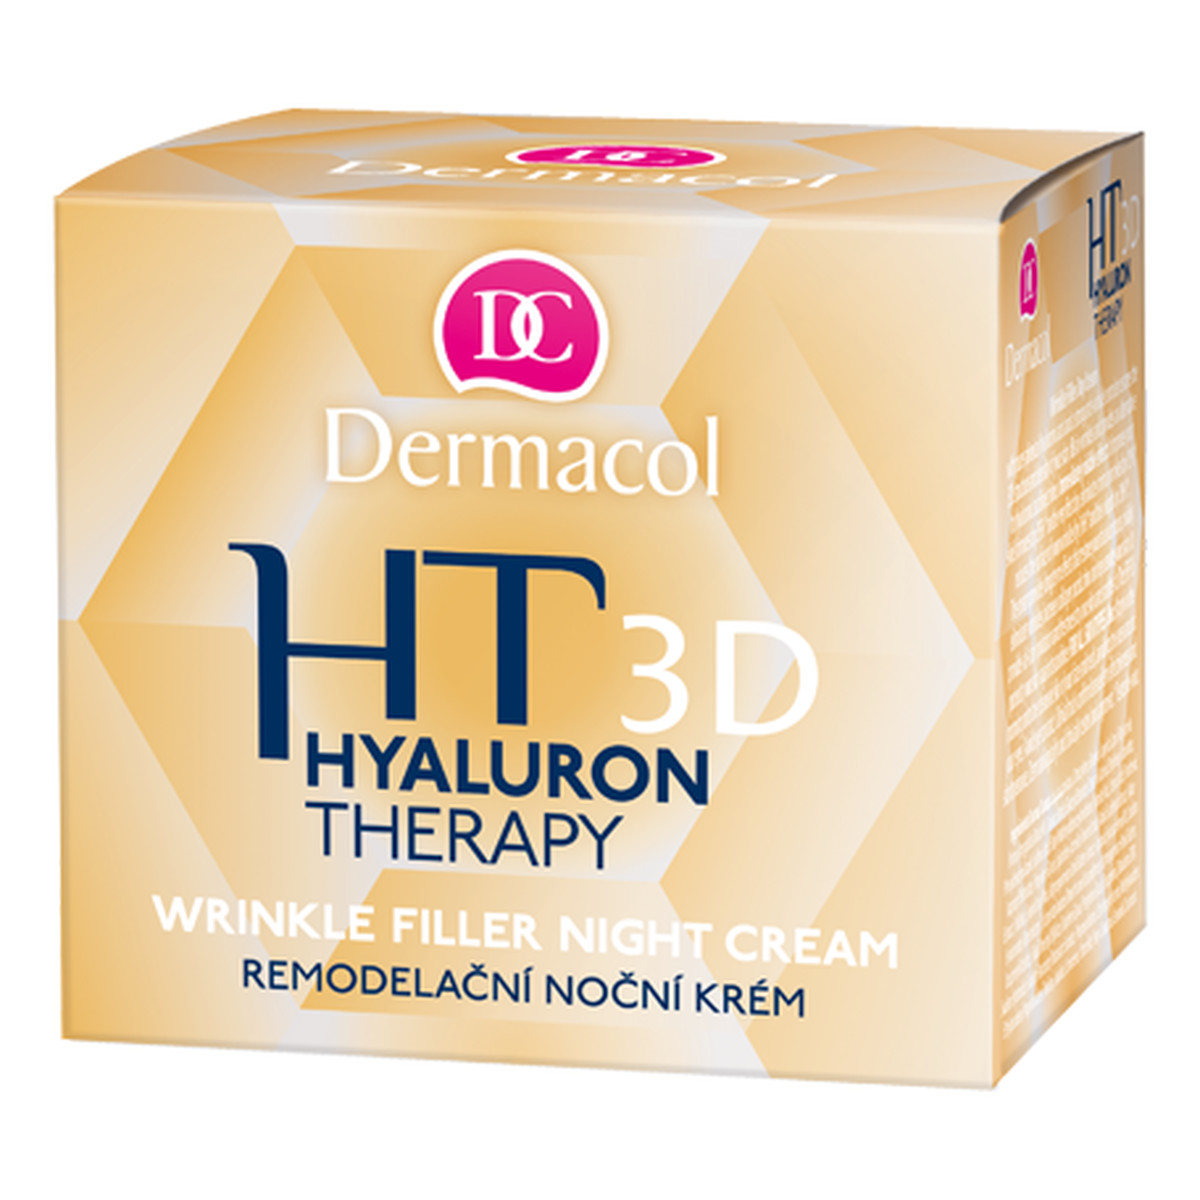 Dermacol Hyaluron Therapy 3D modelujący krem do twarzy na noc 50ml